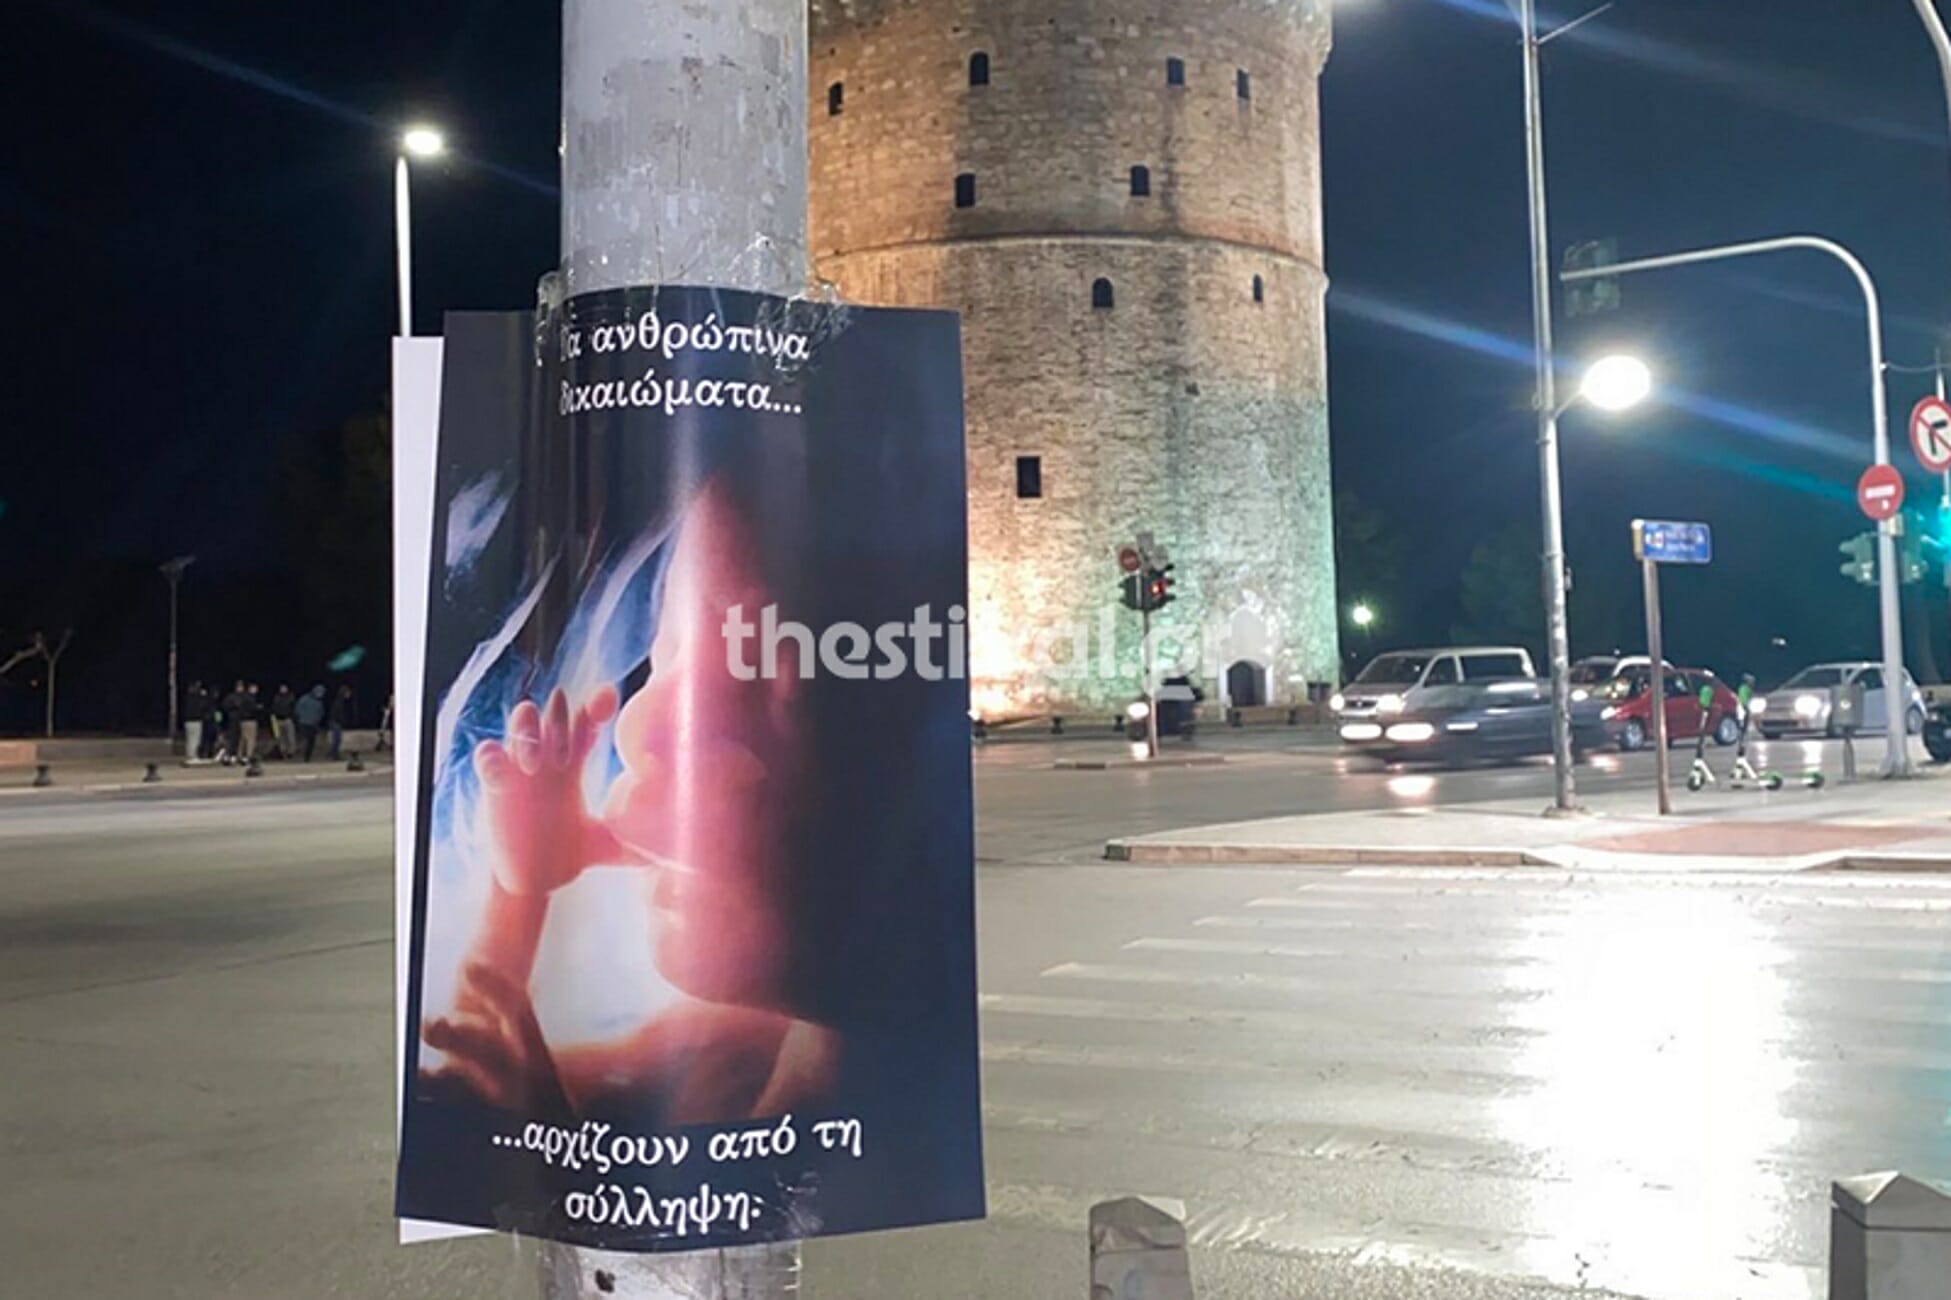 Θεσσαλονίκη: “Πλημμύρισε” η Βόρεια Ελλάδα με αφίσες κατά των αμβλώσεων (Φωτό)